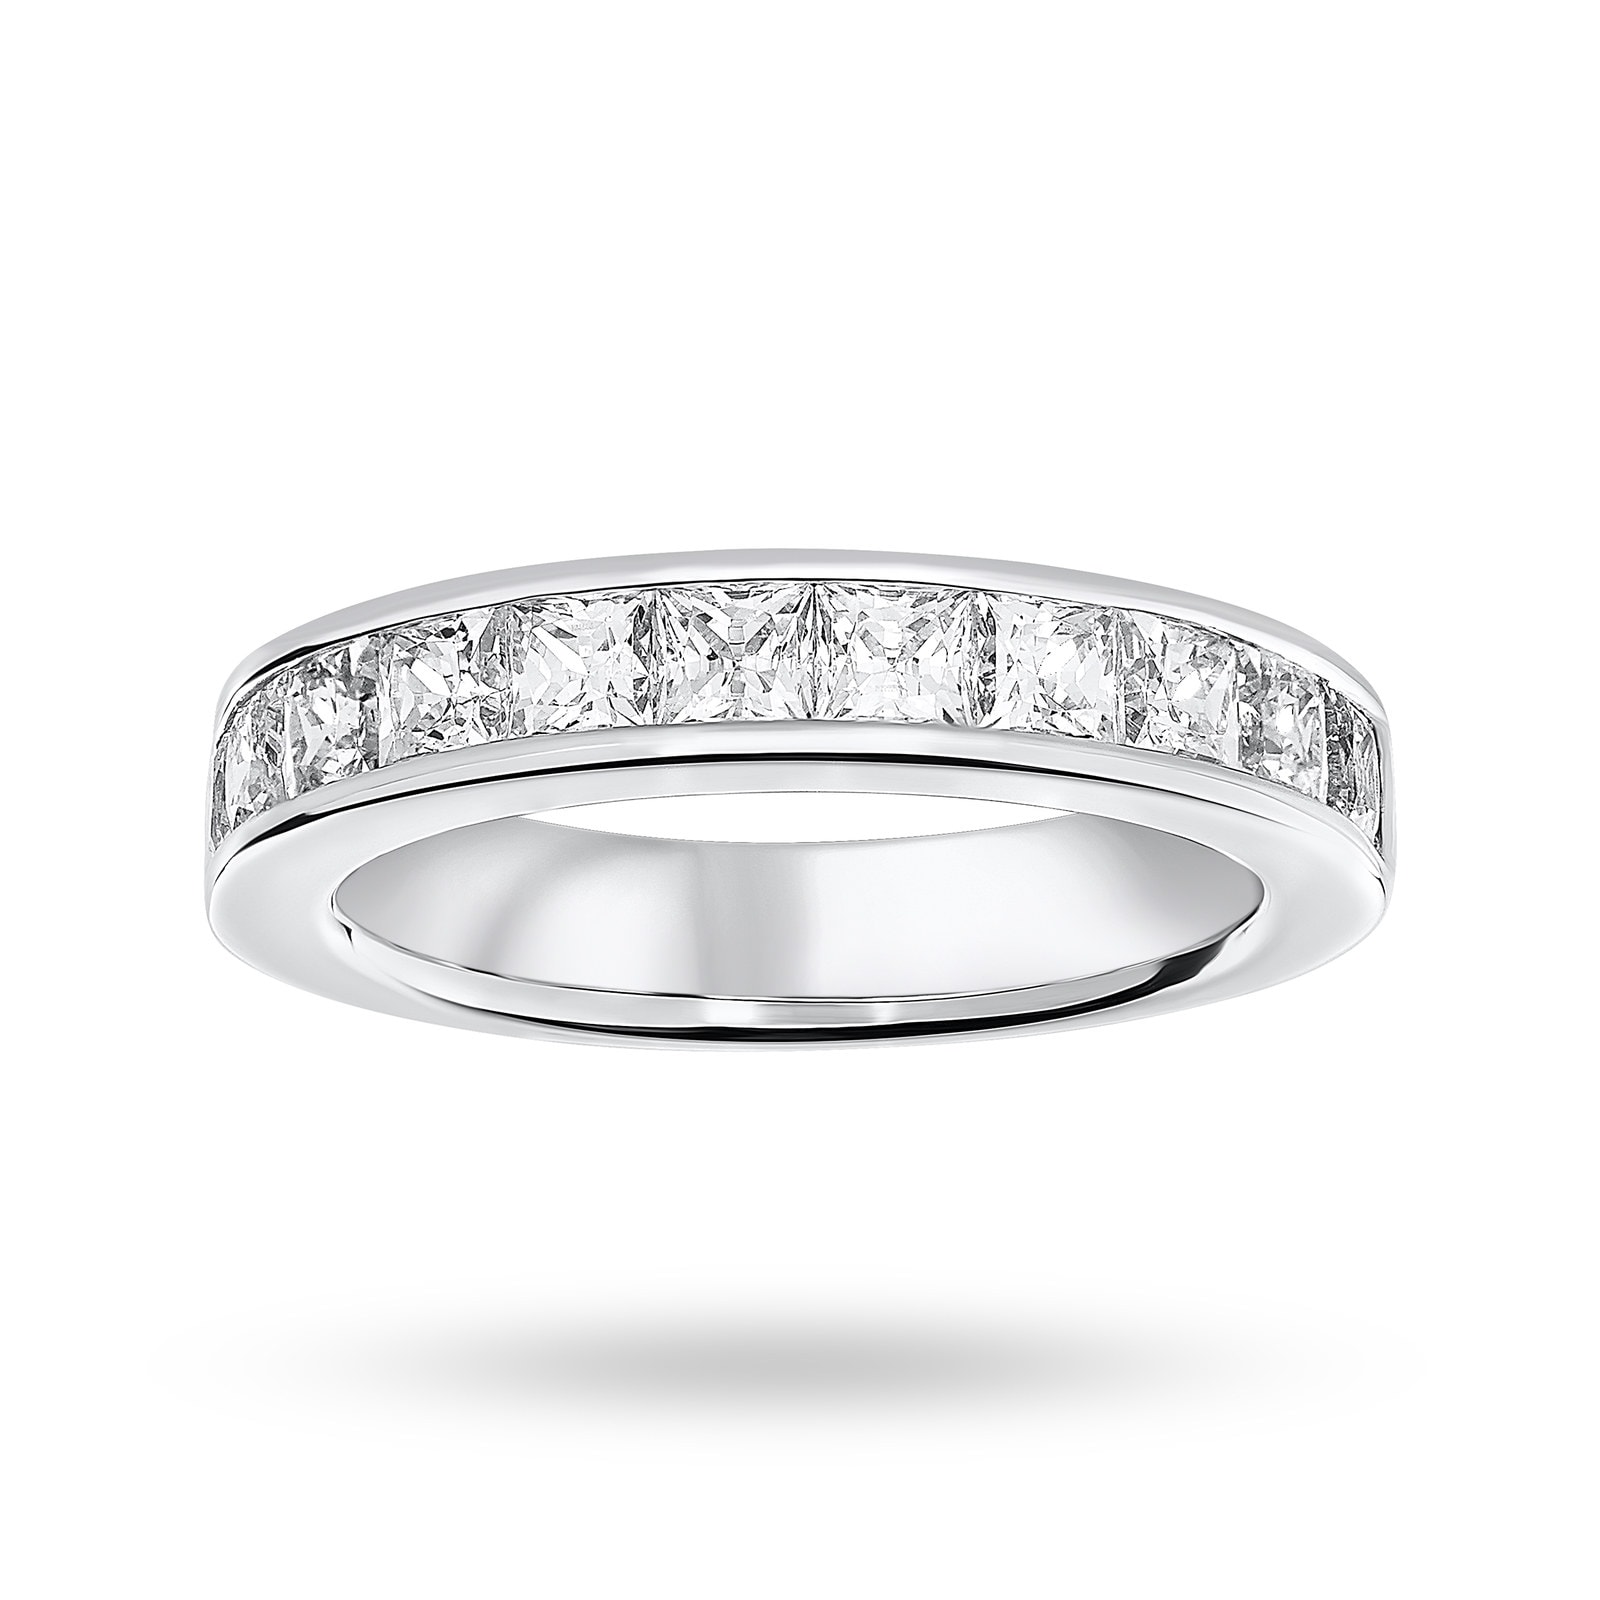 9 Carat White Gold 2.00 Carat Princess Cut Half Eternity Ring - Ring Size O